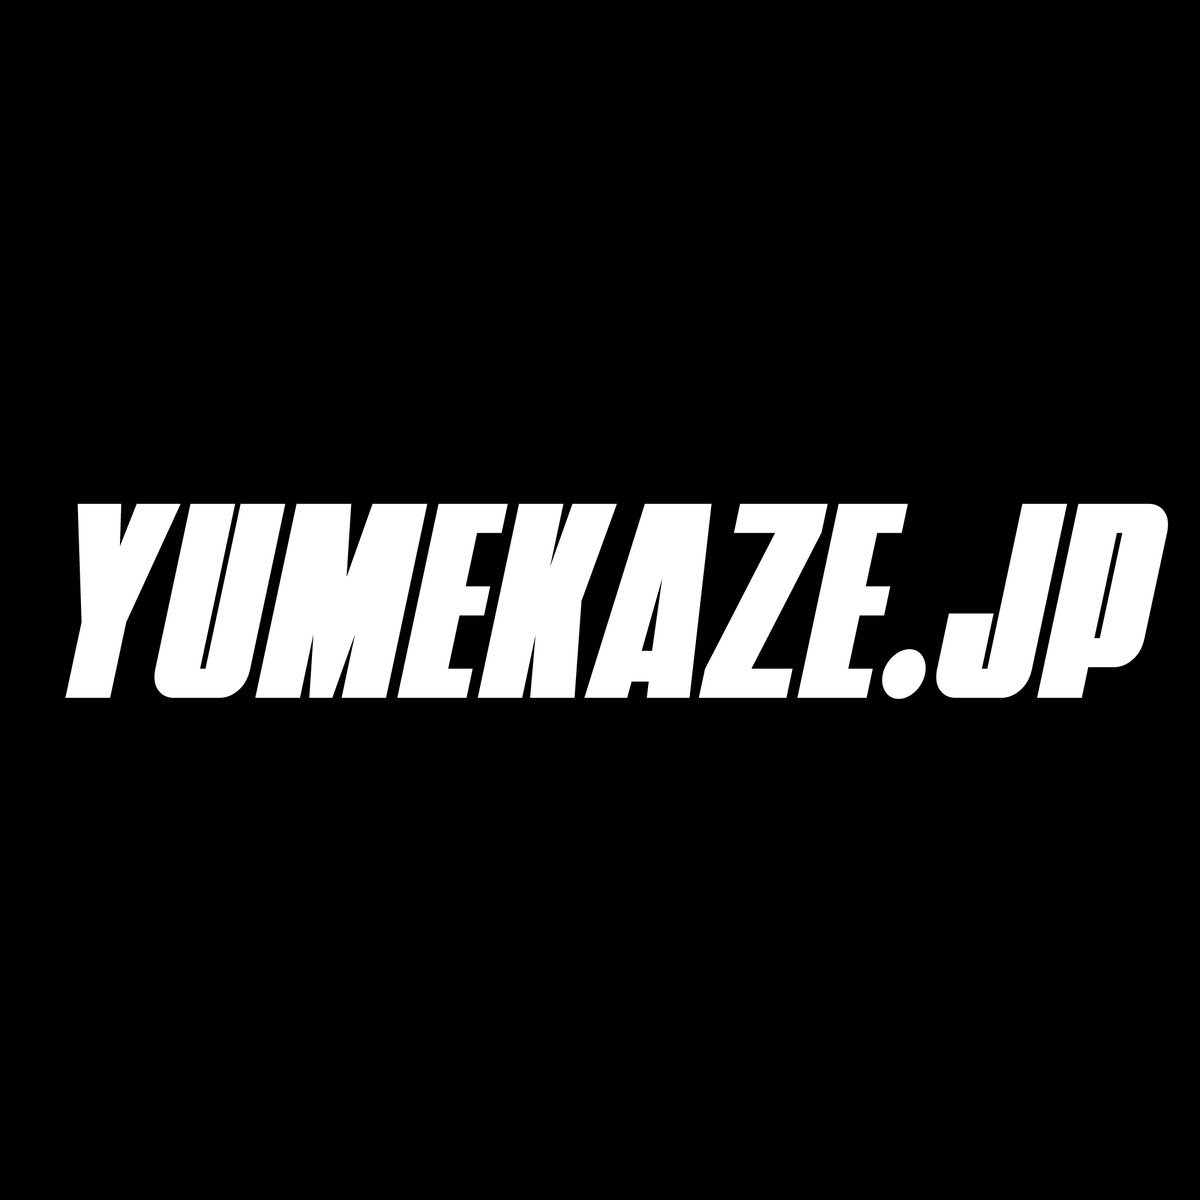 Yumekaze.jp